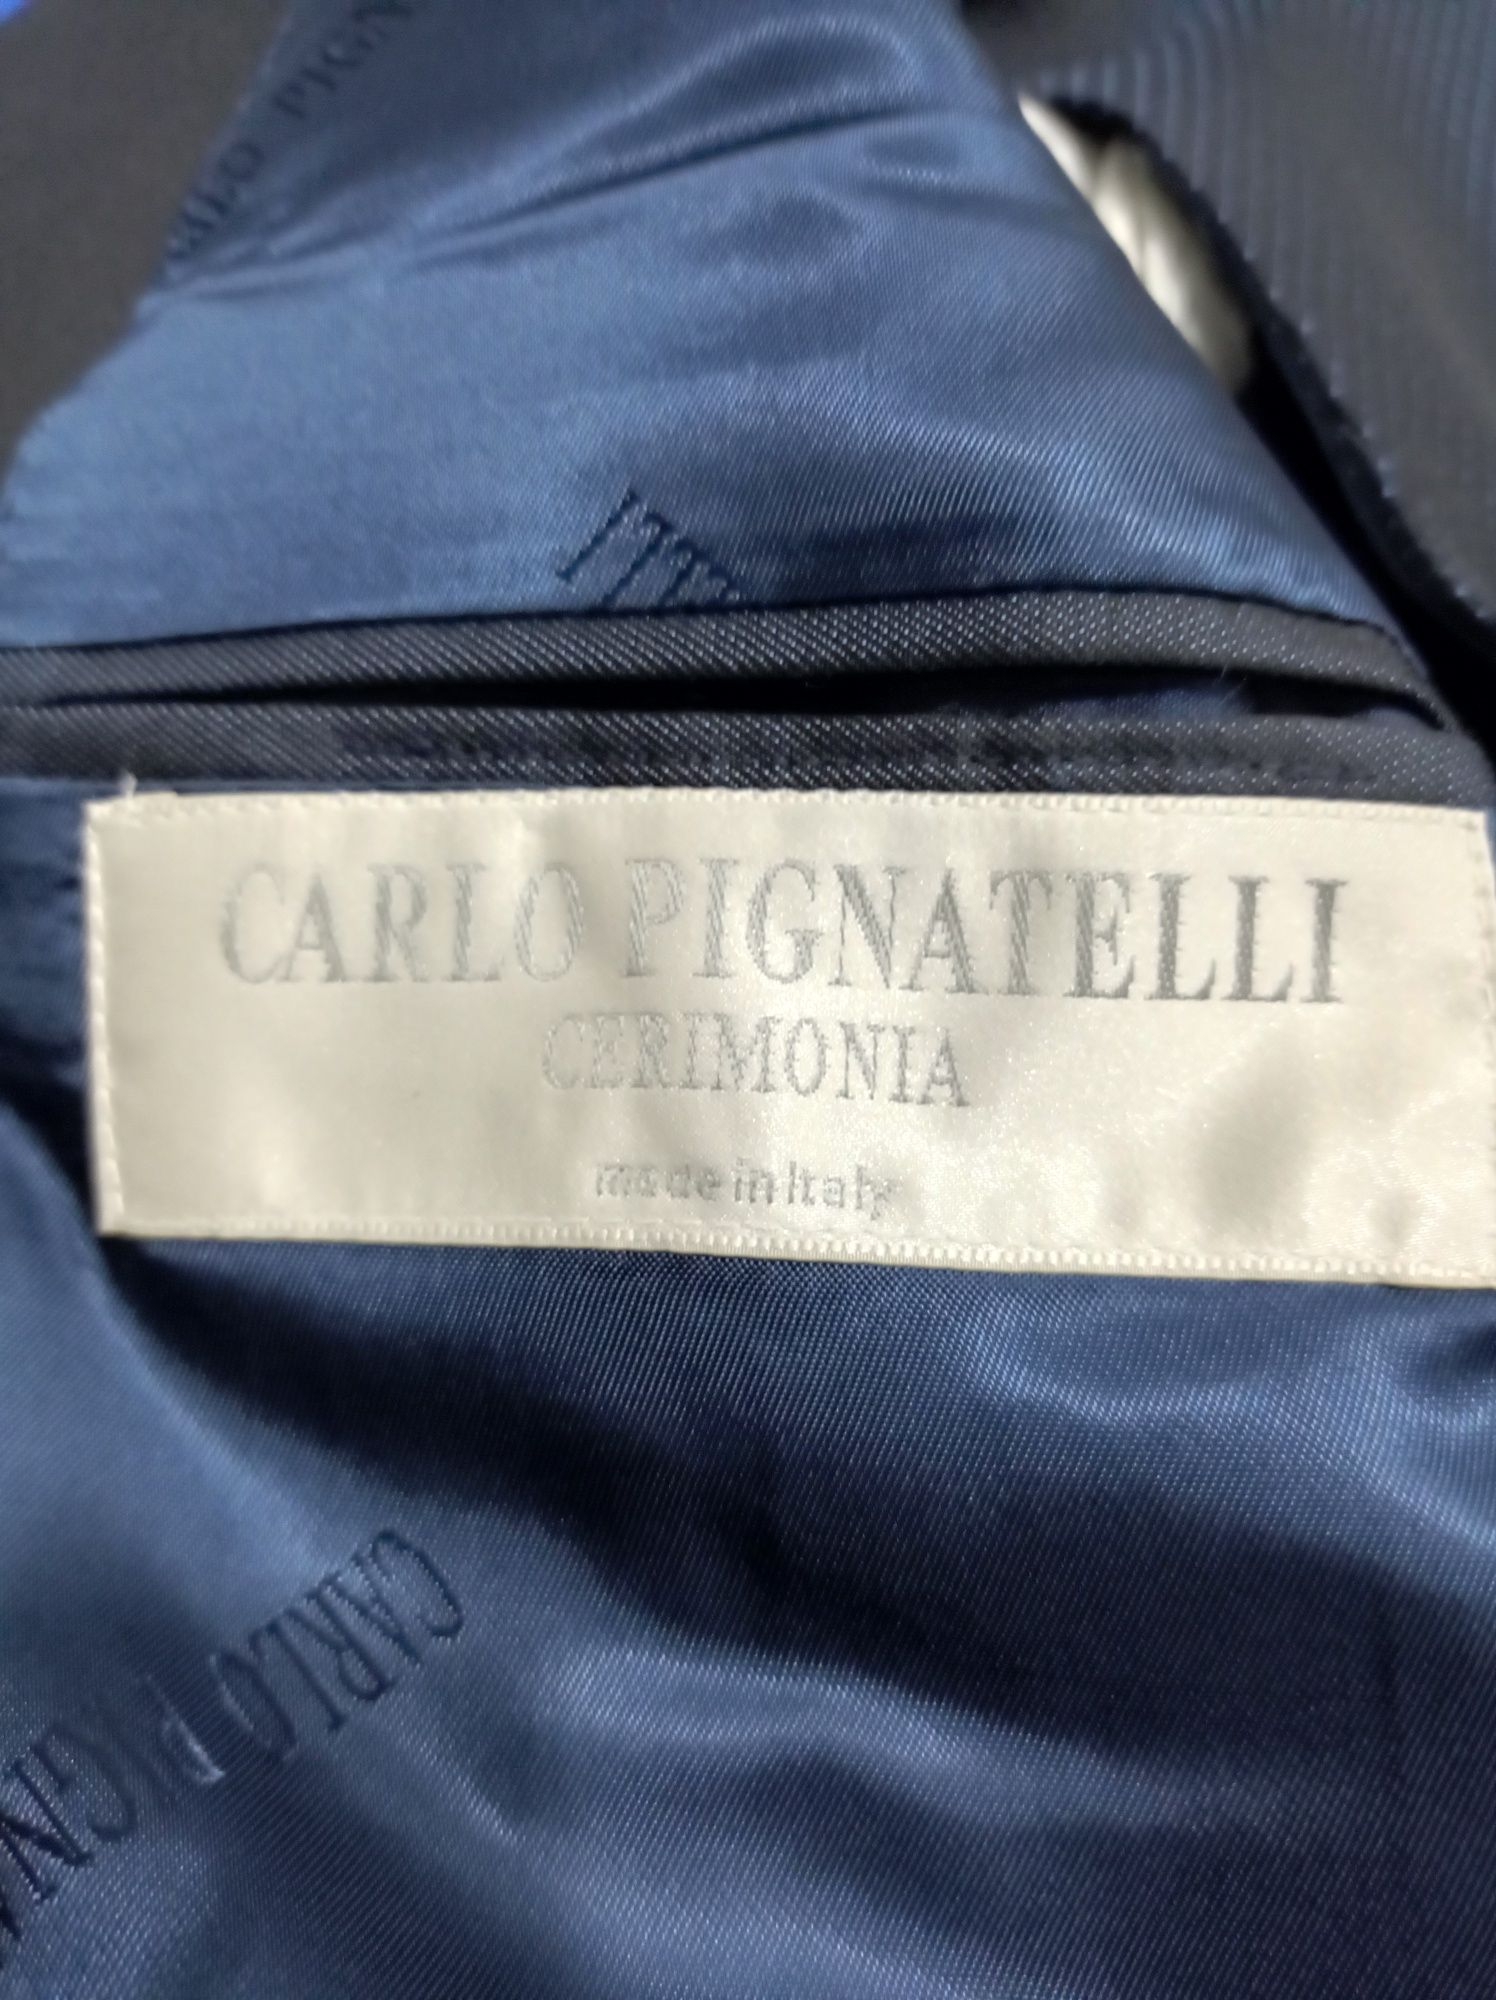 Costum Carlo Pignatelli